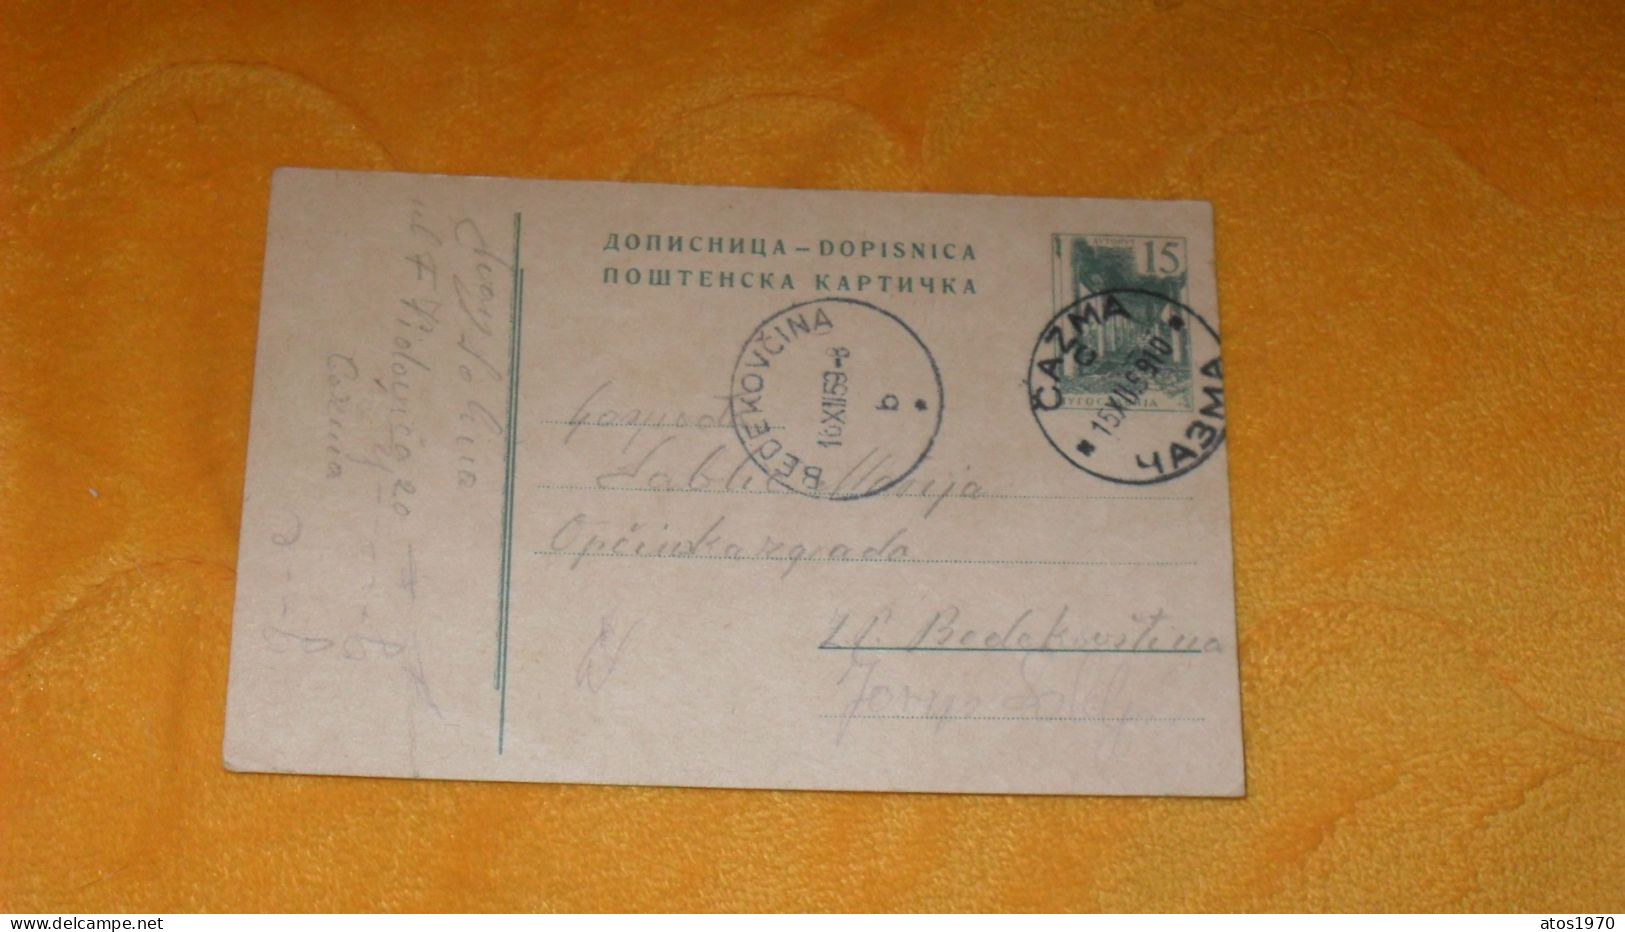 CARTE POSTALE ANCIENNE DE 1959../ A ETUDIER CACHETS CAZMA + TIMBRE ENTIER.. - Postal Stationery